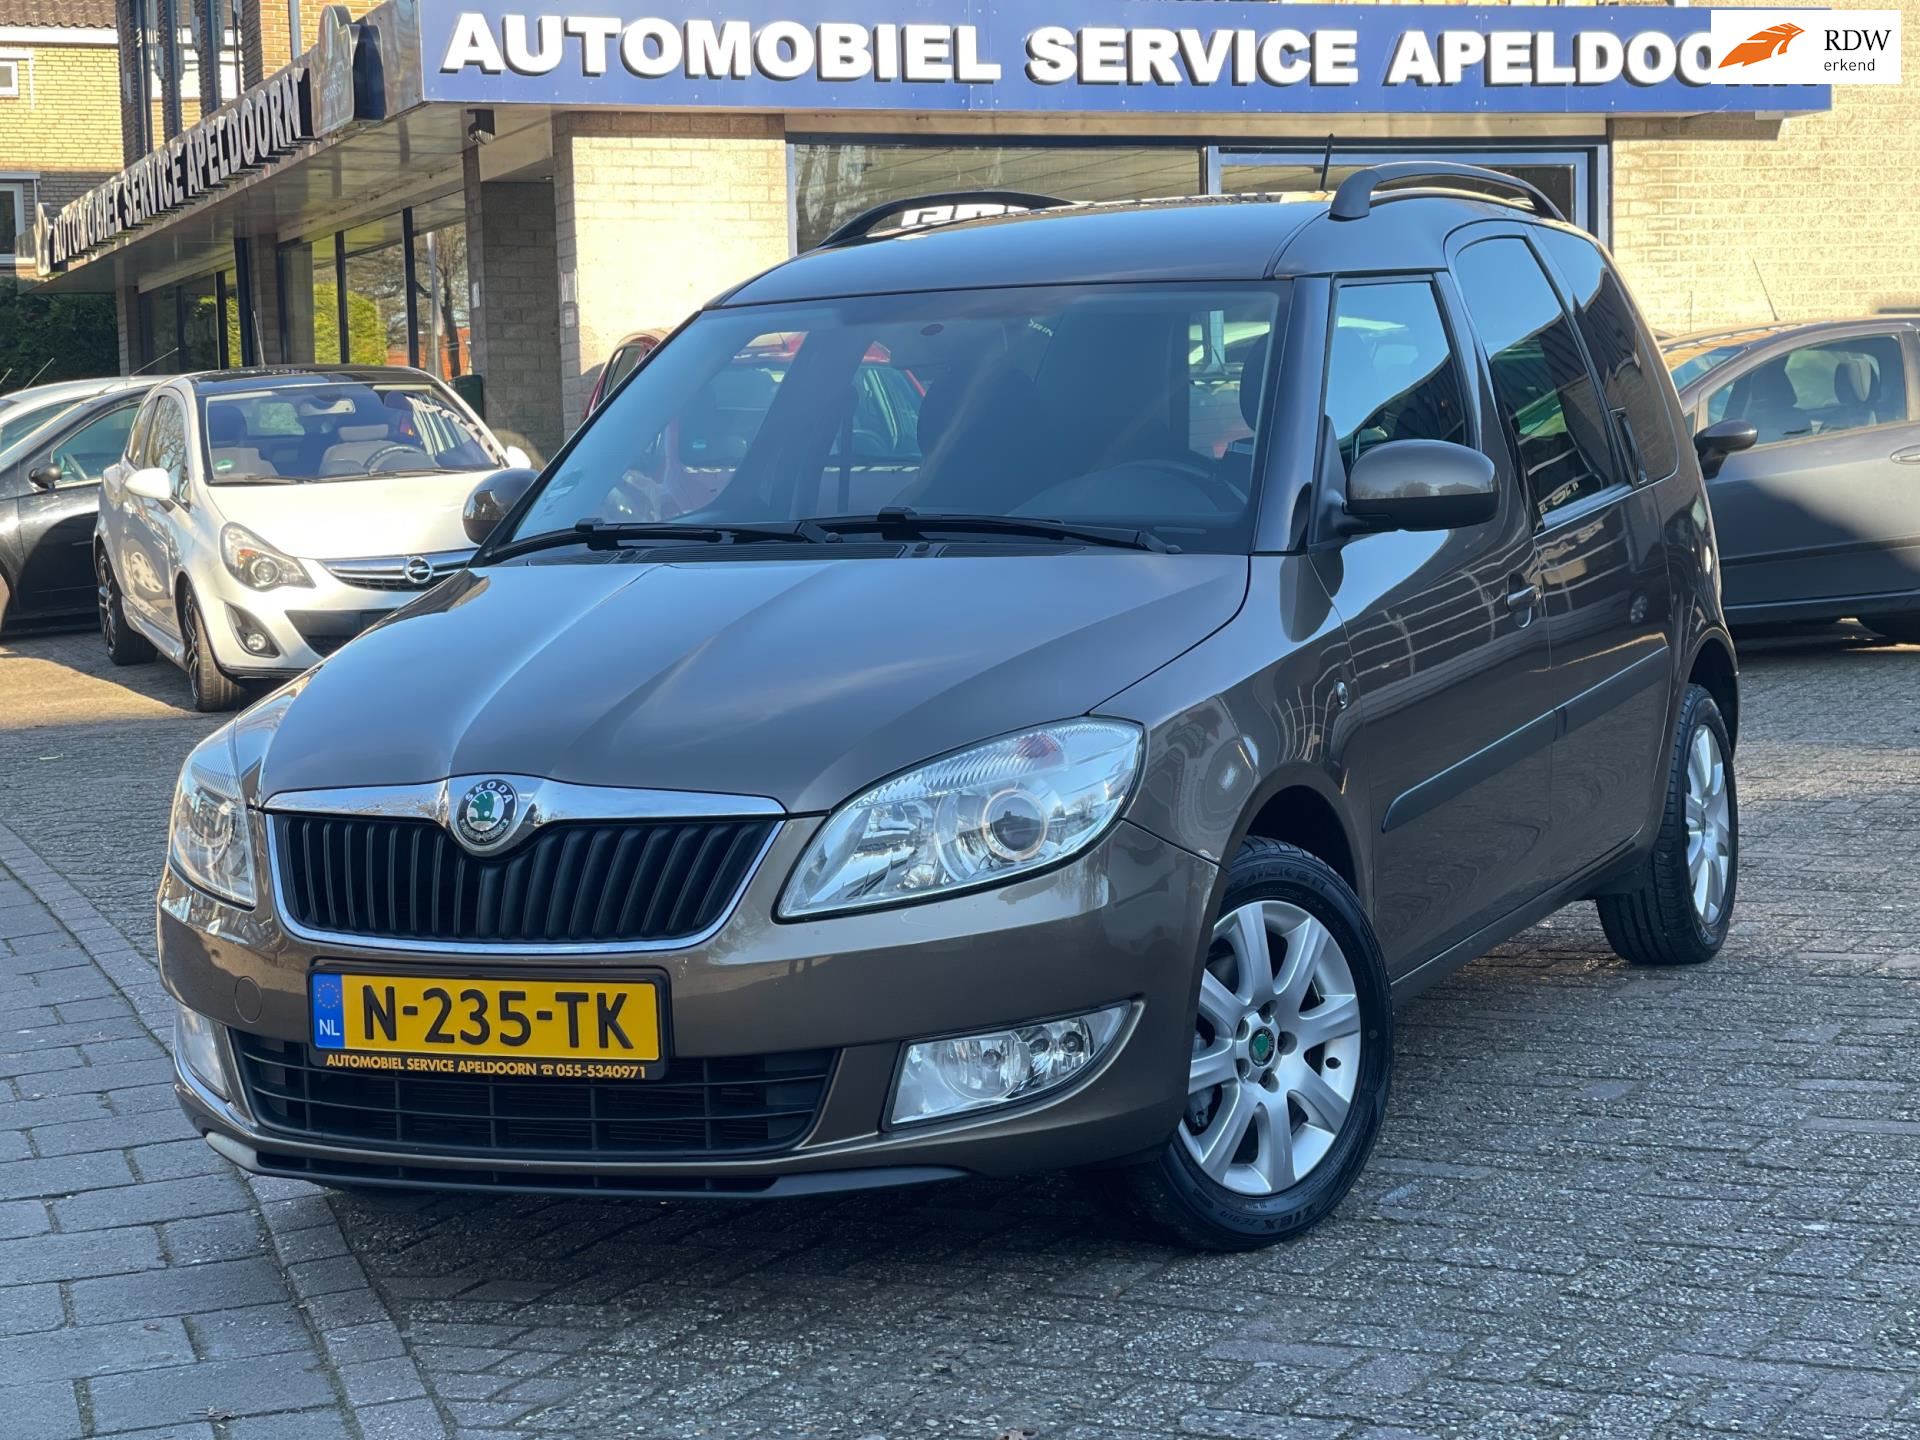 Skoda ROOMSTER occasion - Automobiel Service Apeldoorn